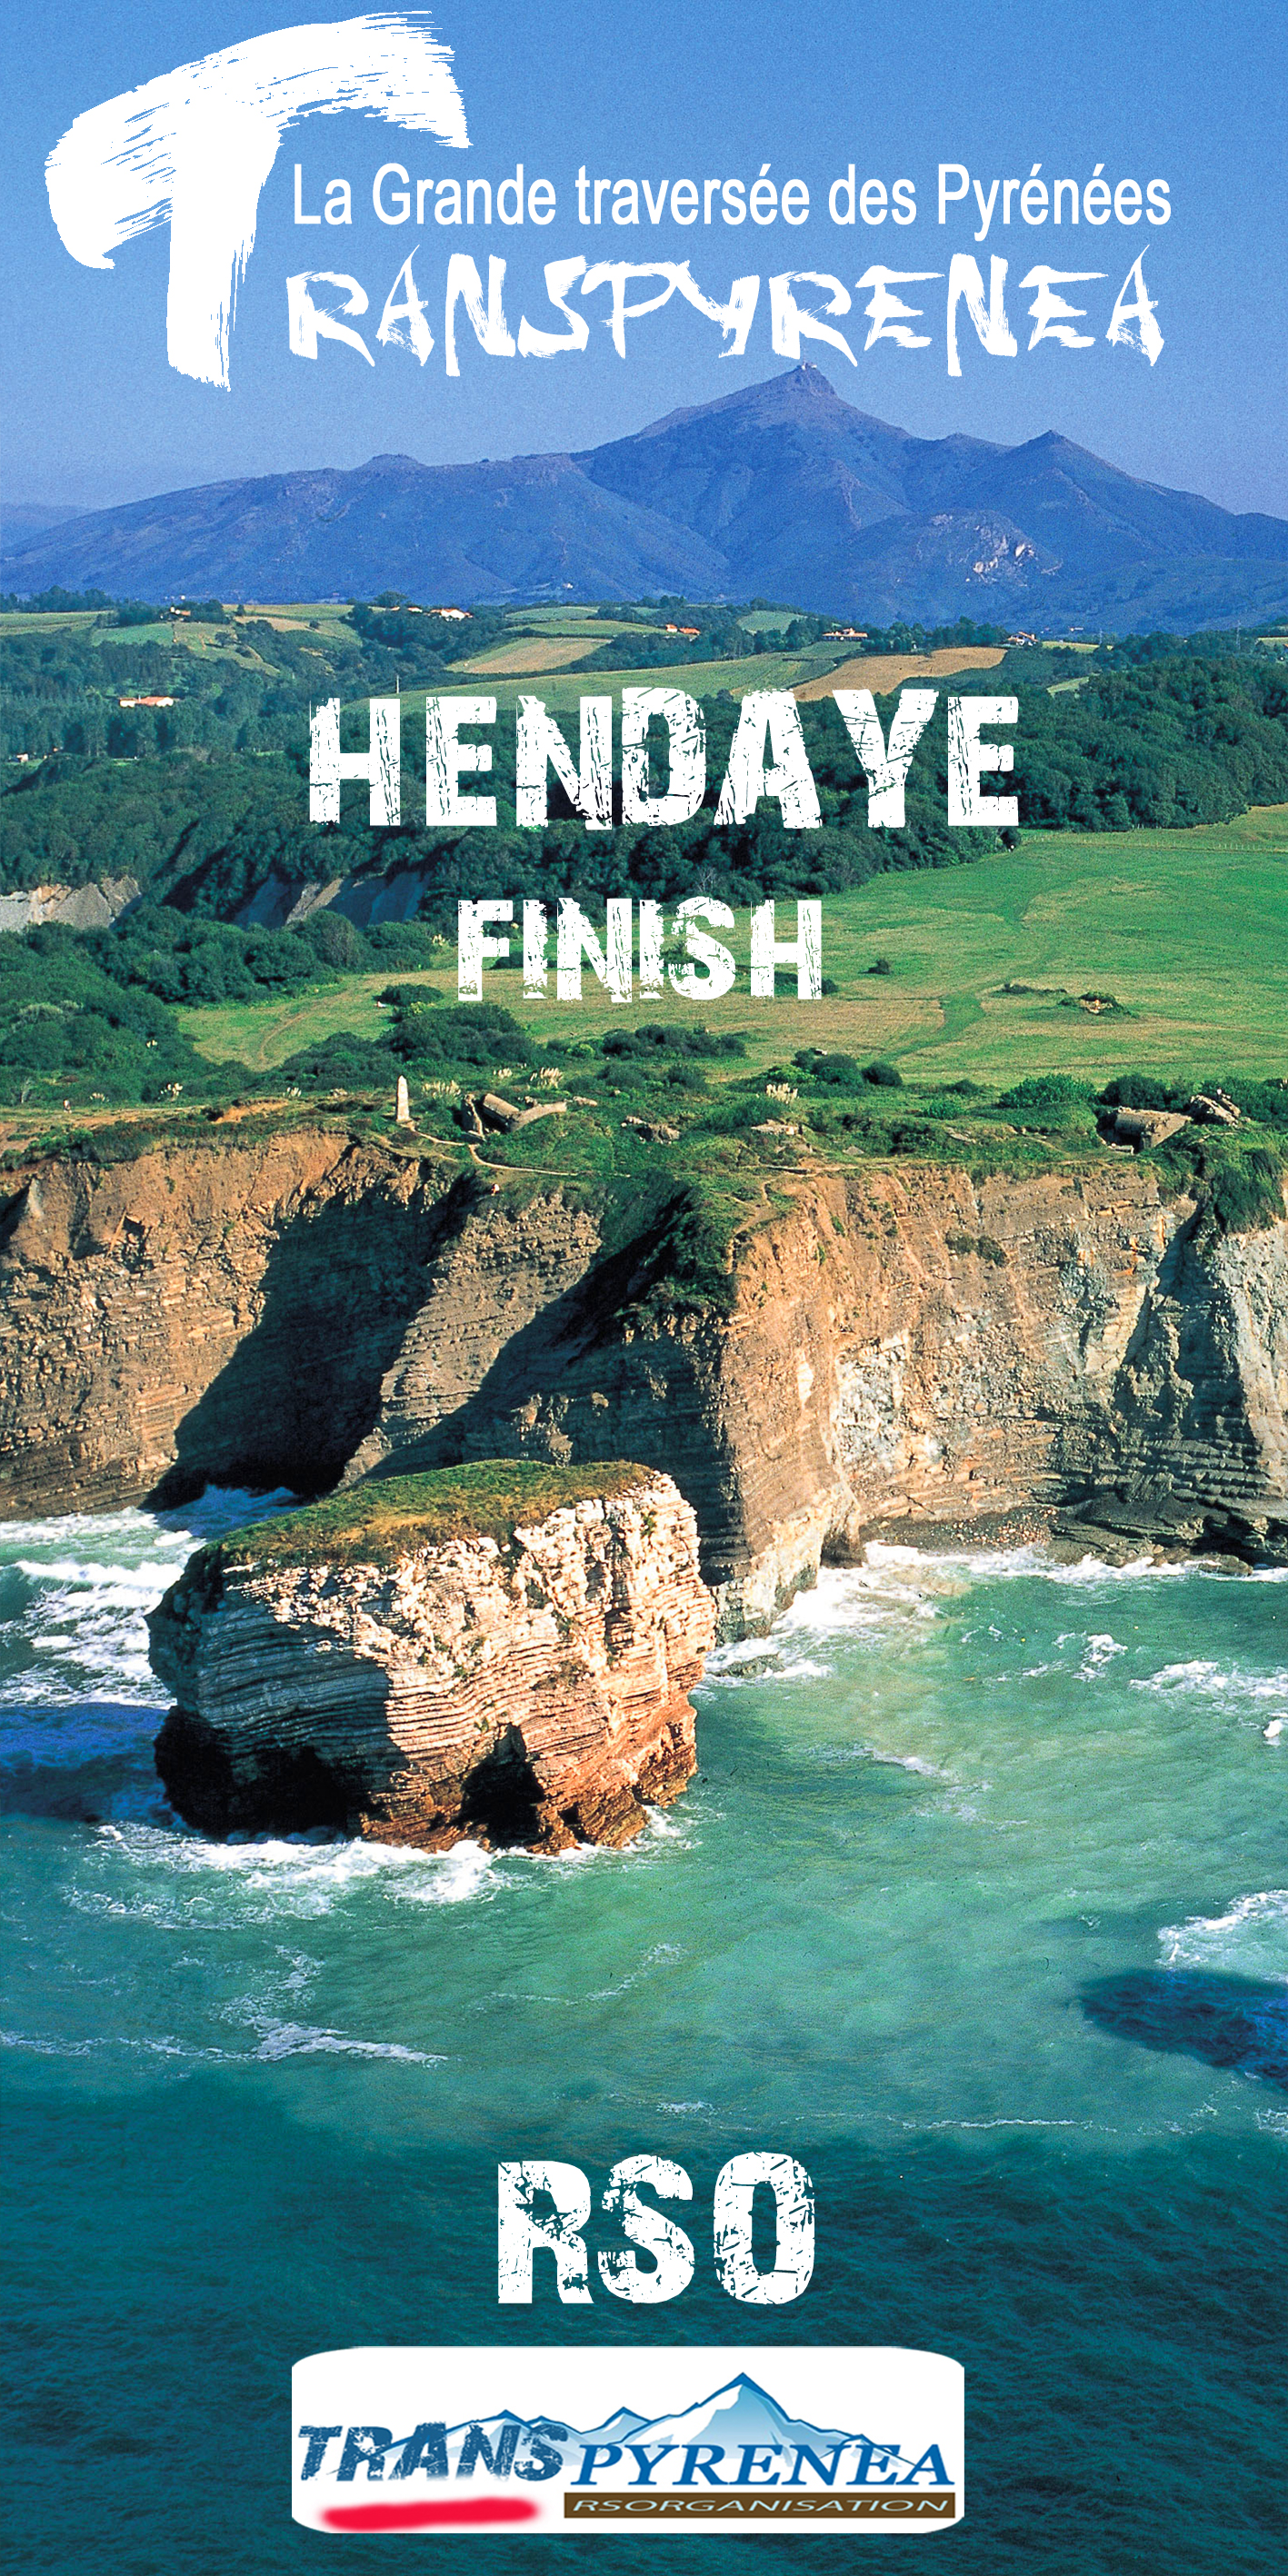 Z finish Hendaye